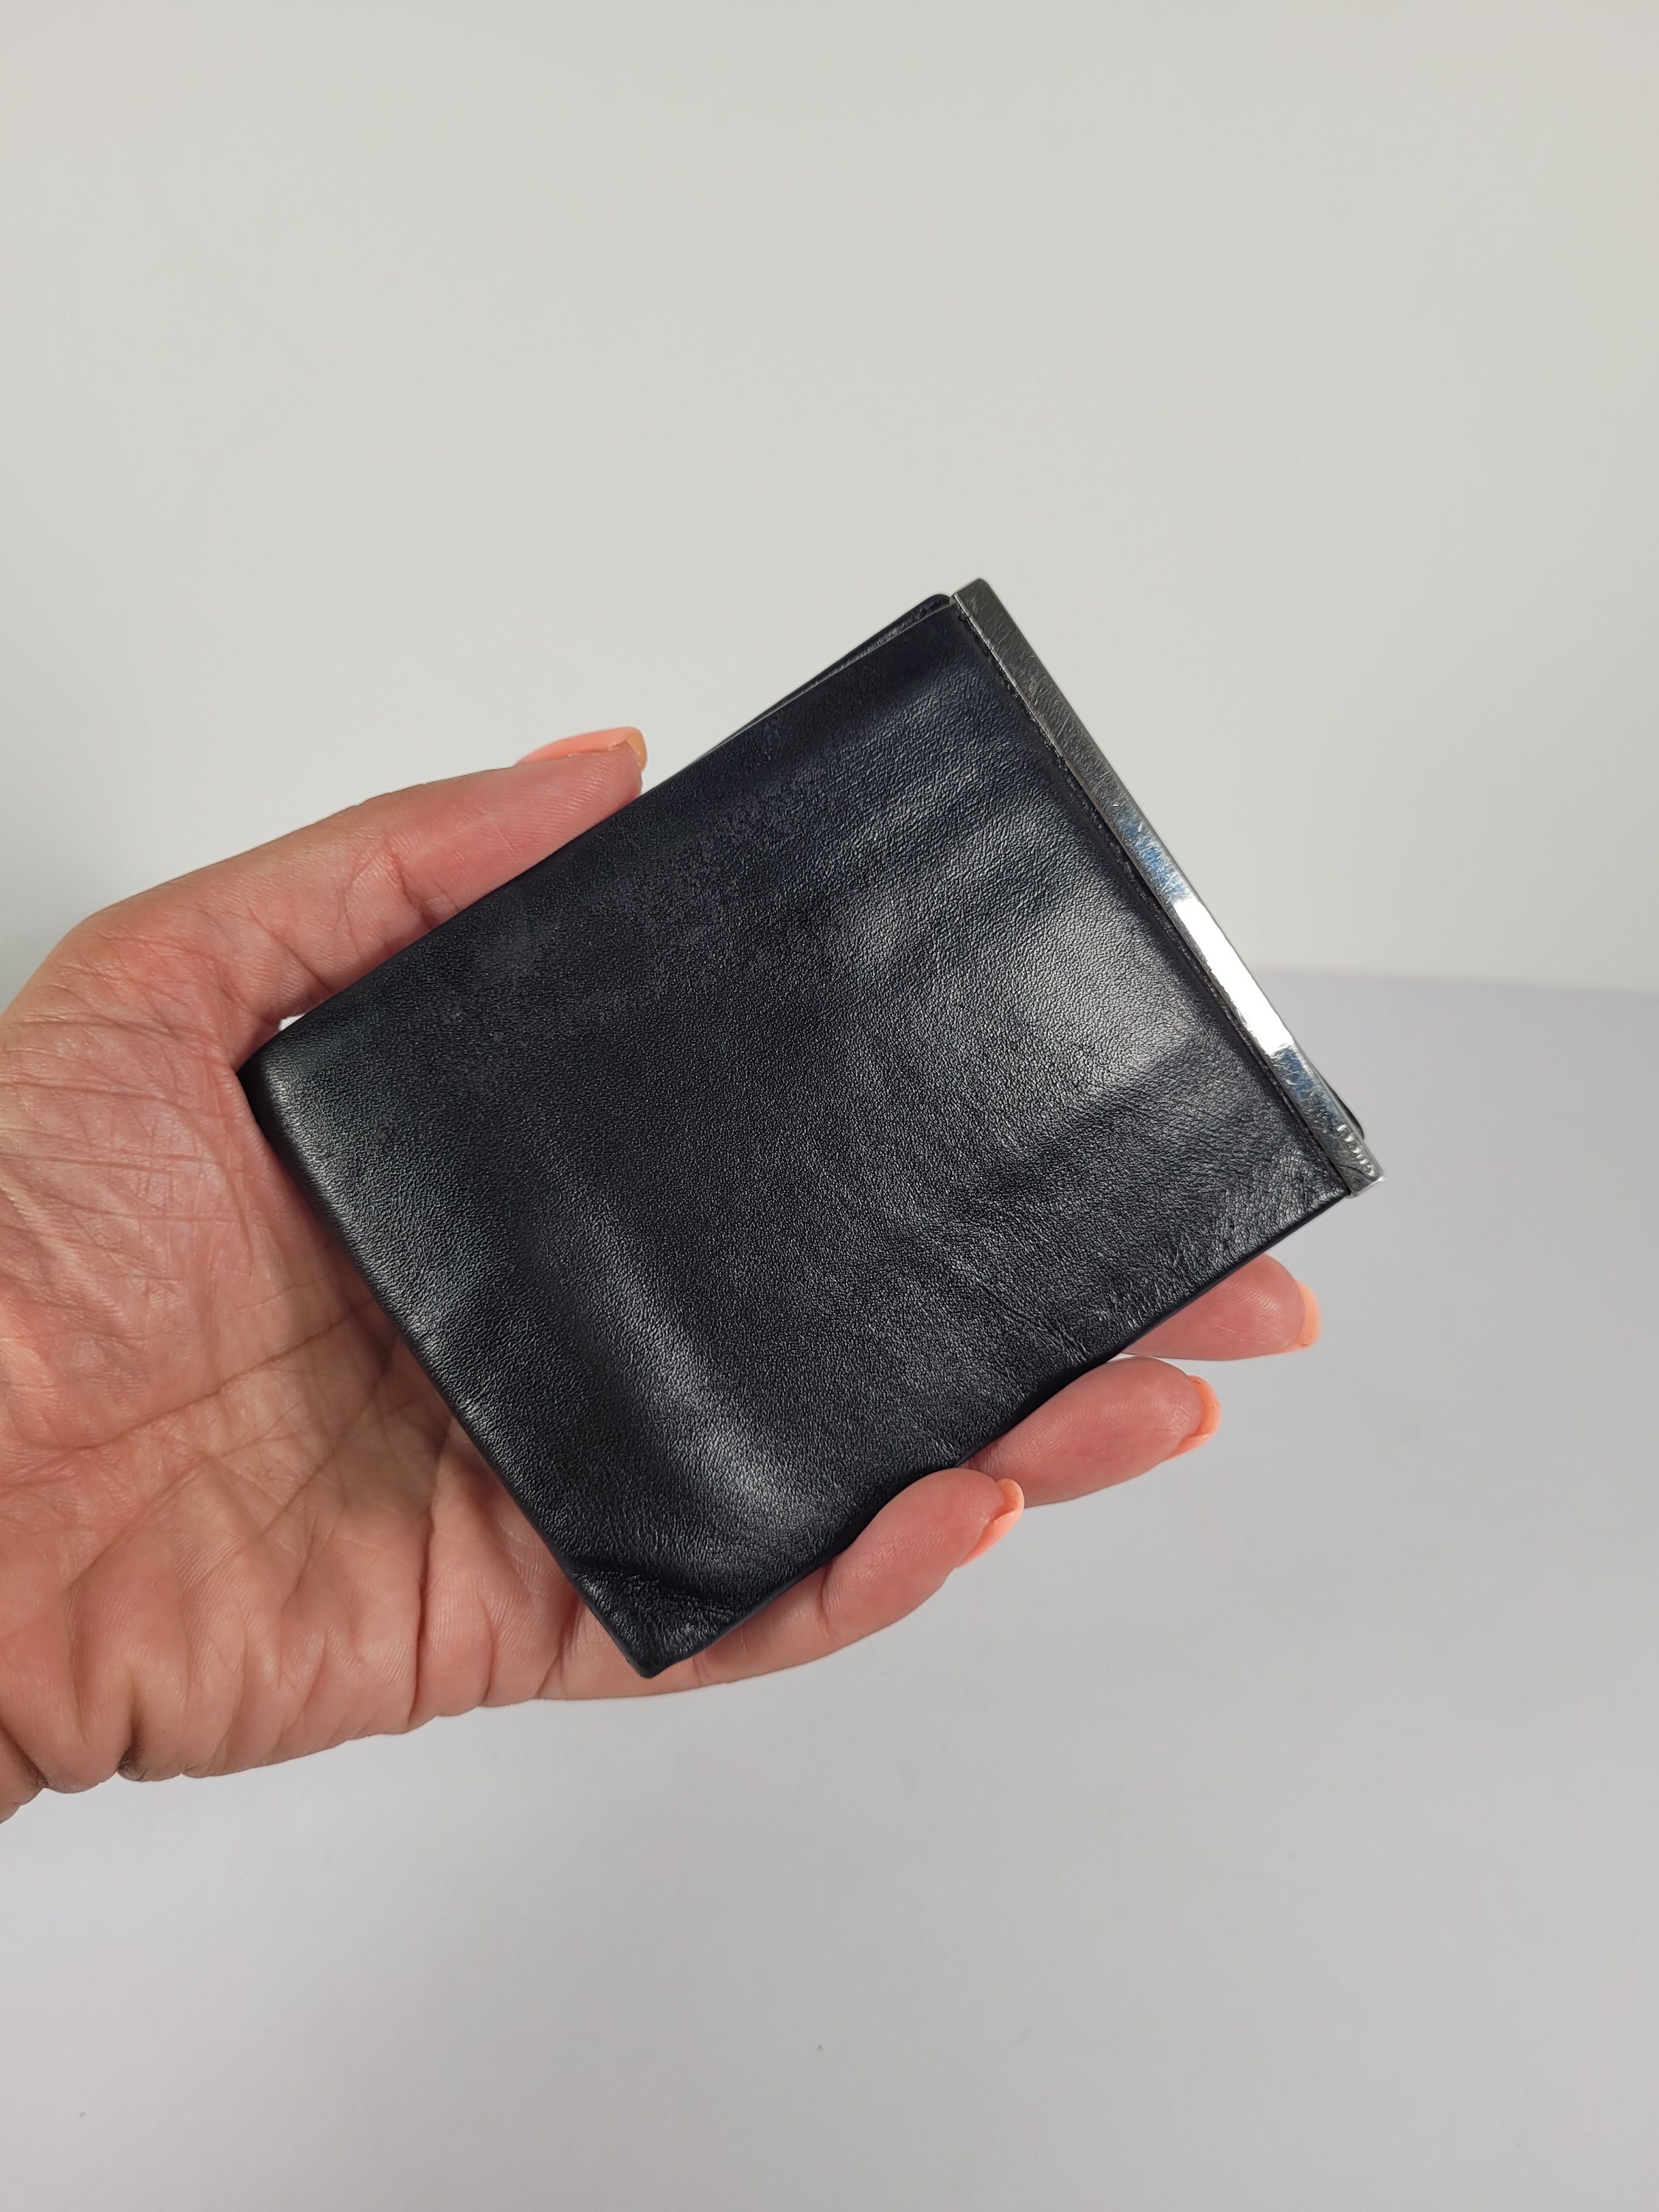 Louis Vuitton LV Bifold wallet 7 1/2: x 3 3.4: x 3.4 black gray